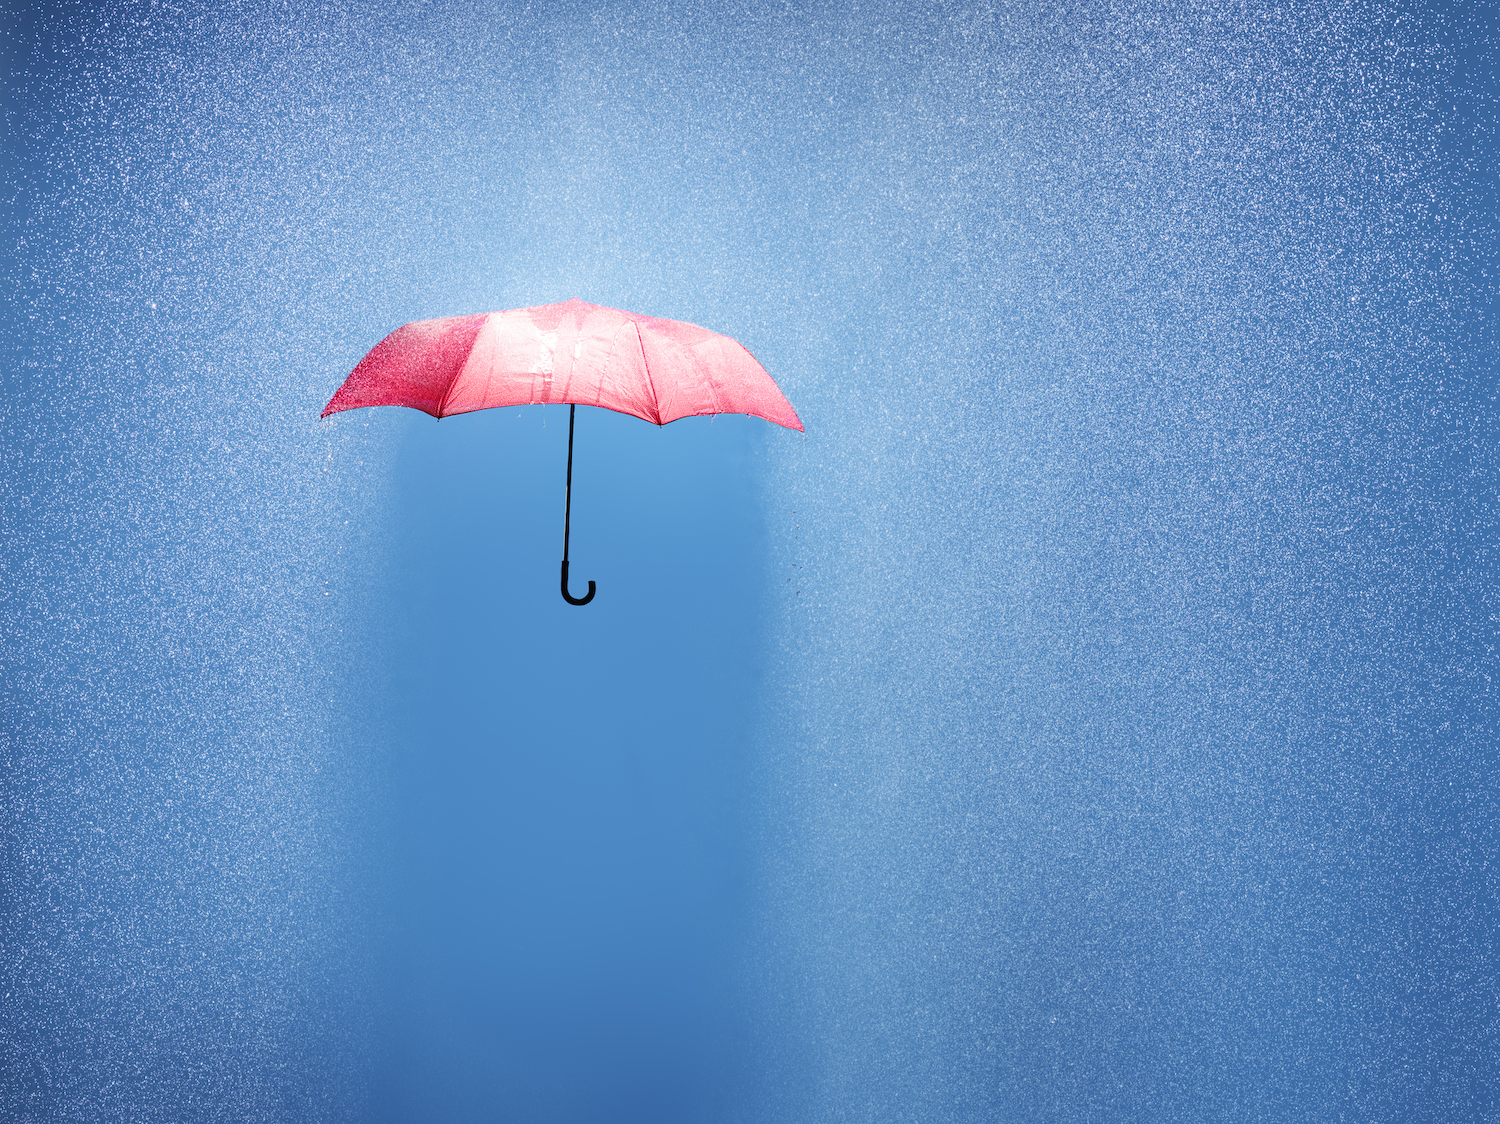 paraguas rosa en una ducha de lluvia, fotografiado conceptualmente